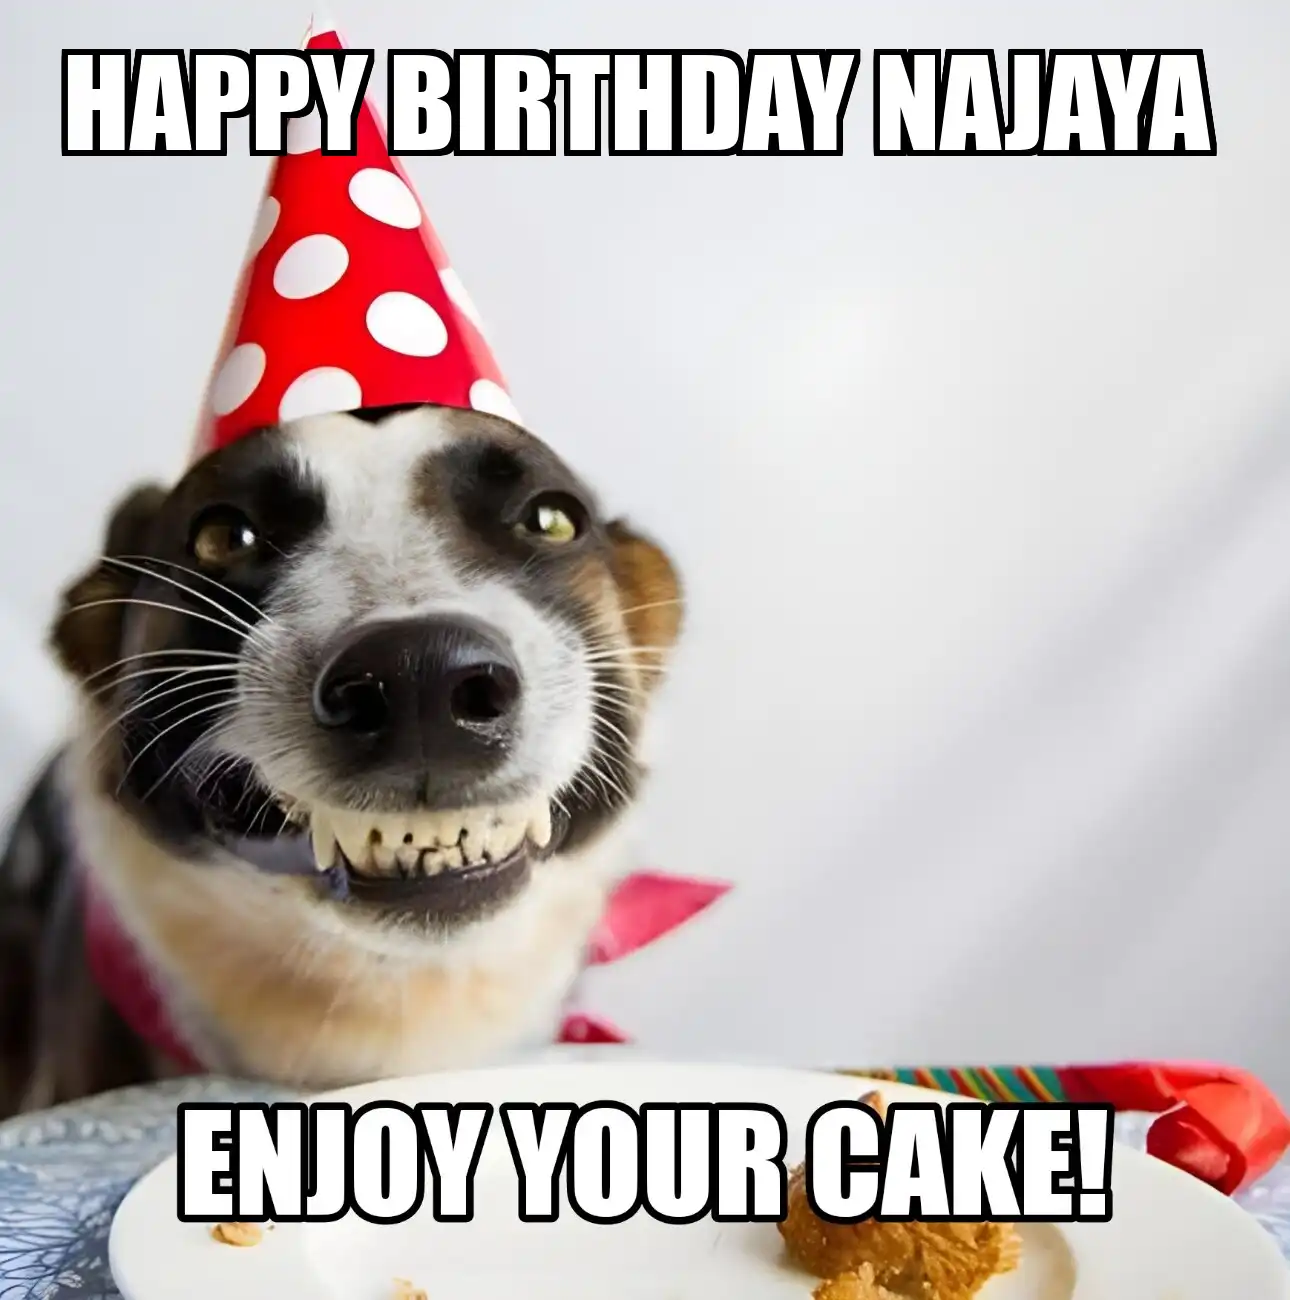 Happy Birthday Najaya Enjoy Your Cake Dog Meme